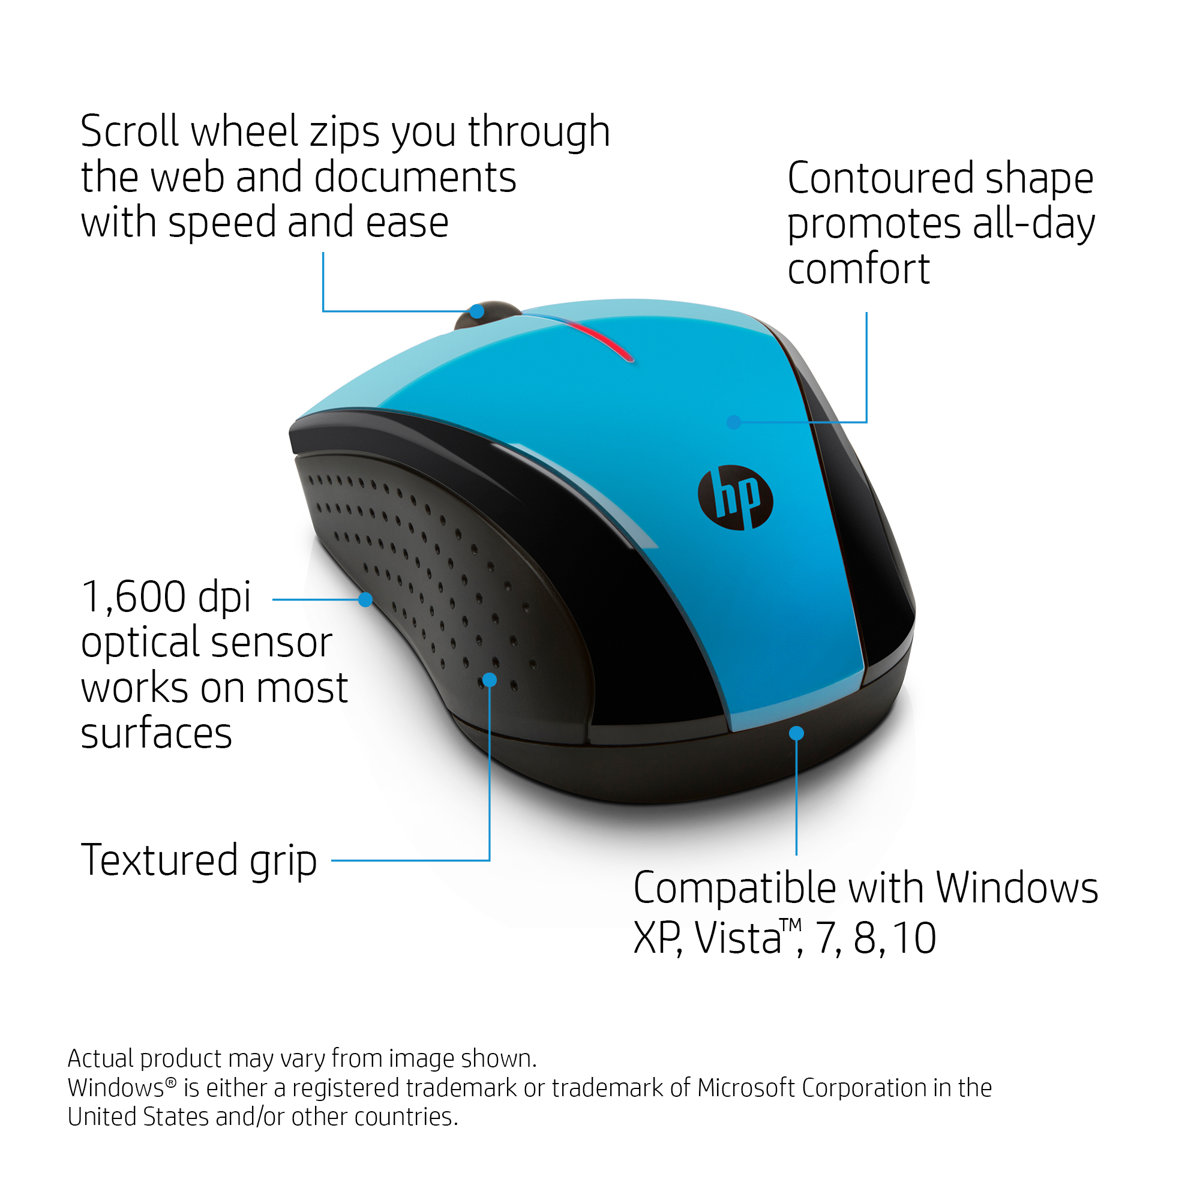 Мышь HP Wireless Mouse X3000 (Cobalt Blue)